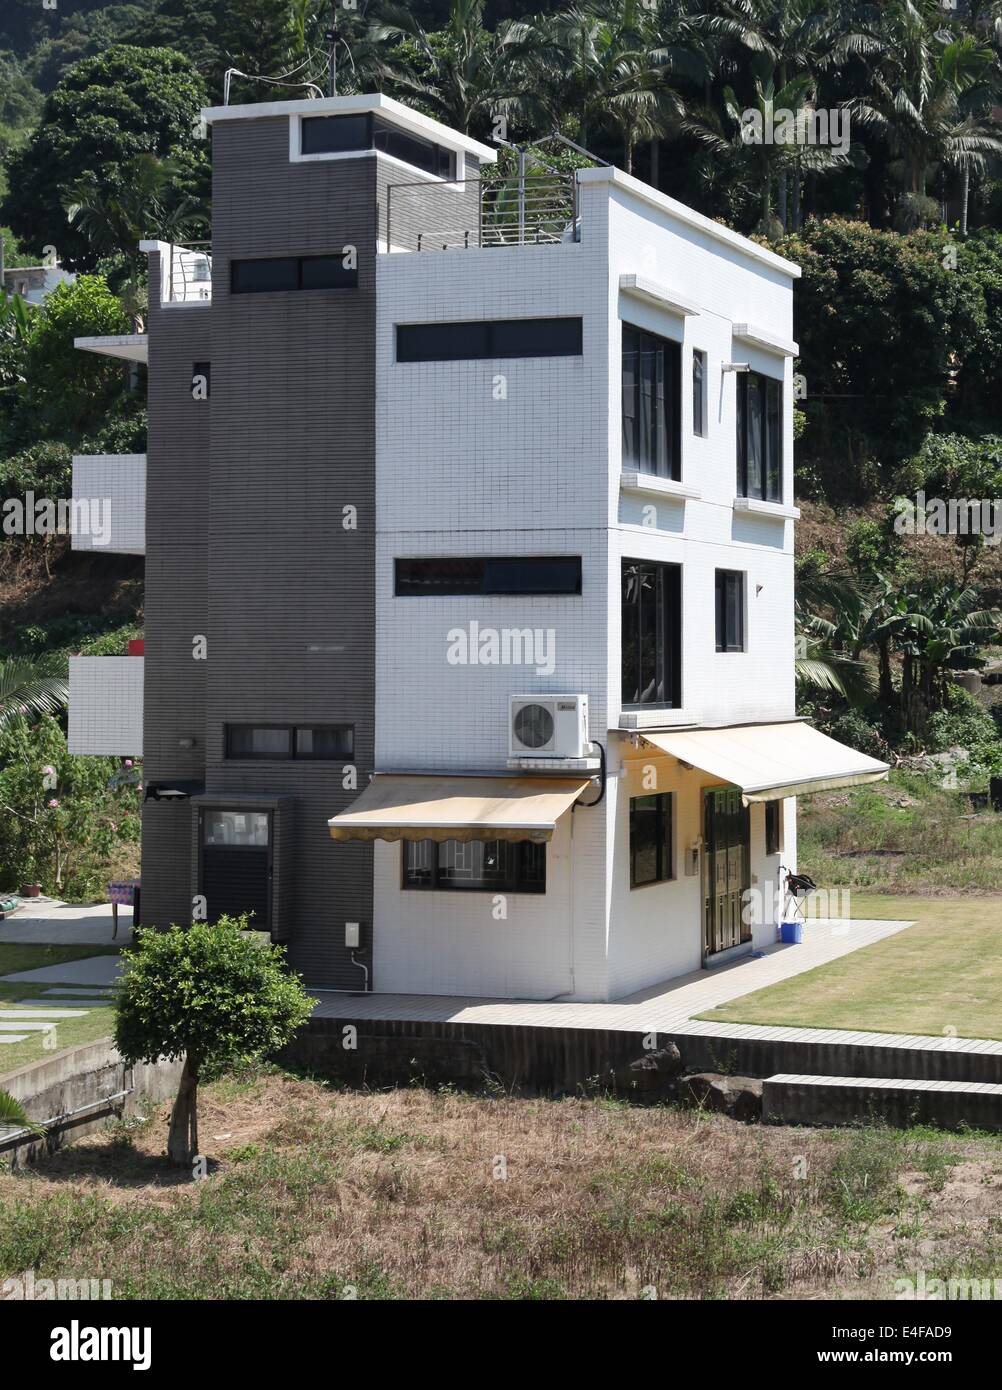 Es ist ein Foto von einem neuen Einfamilienhaus mit 3 Ebenen in Sai Kung in Hong Kong. Es ist im japanischen Stil-Architektur Stockfoto